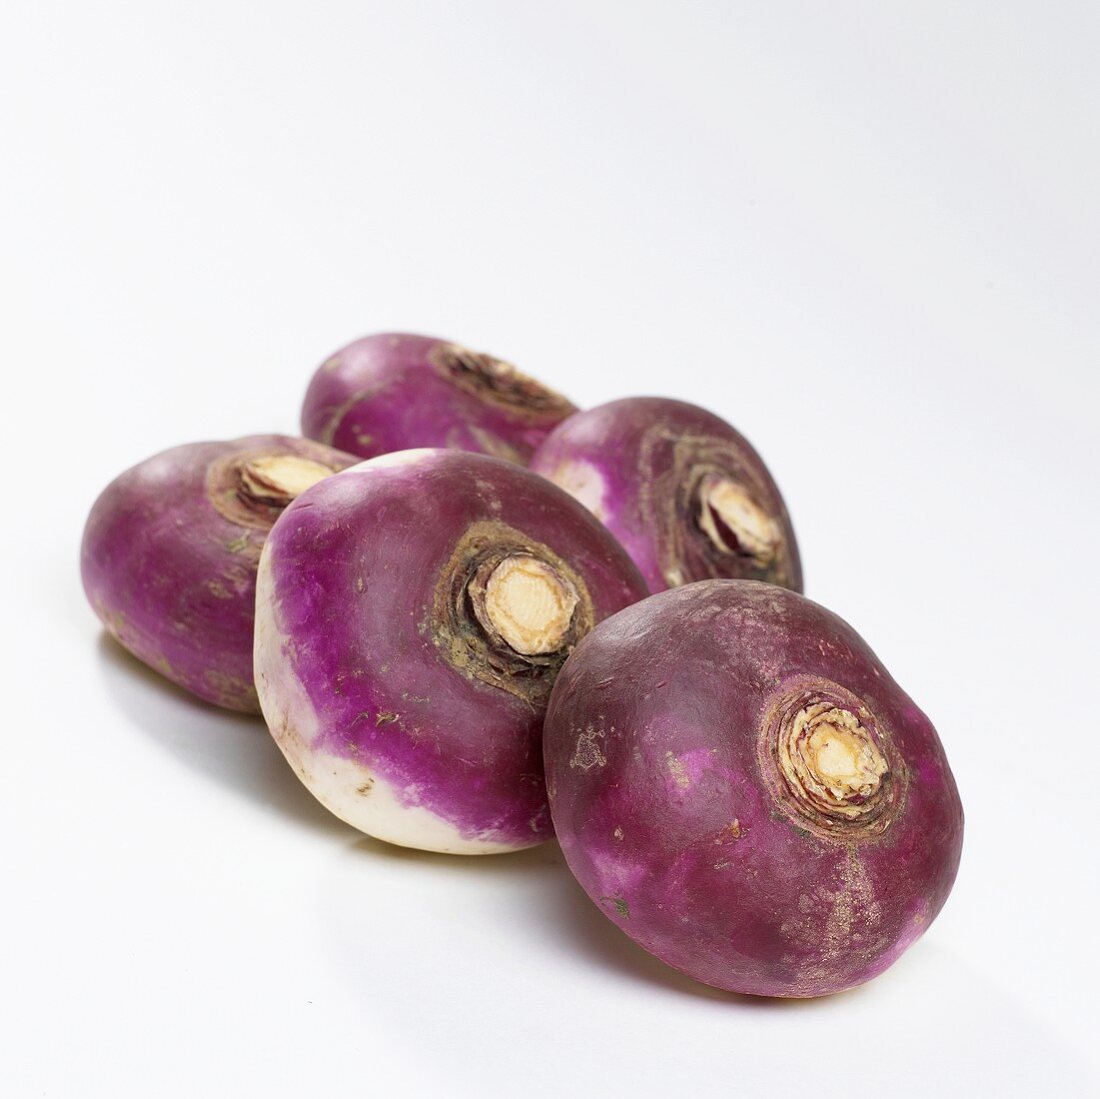 Five turnips